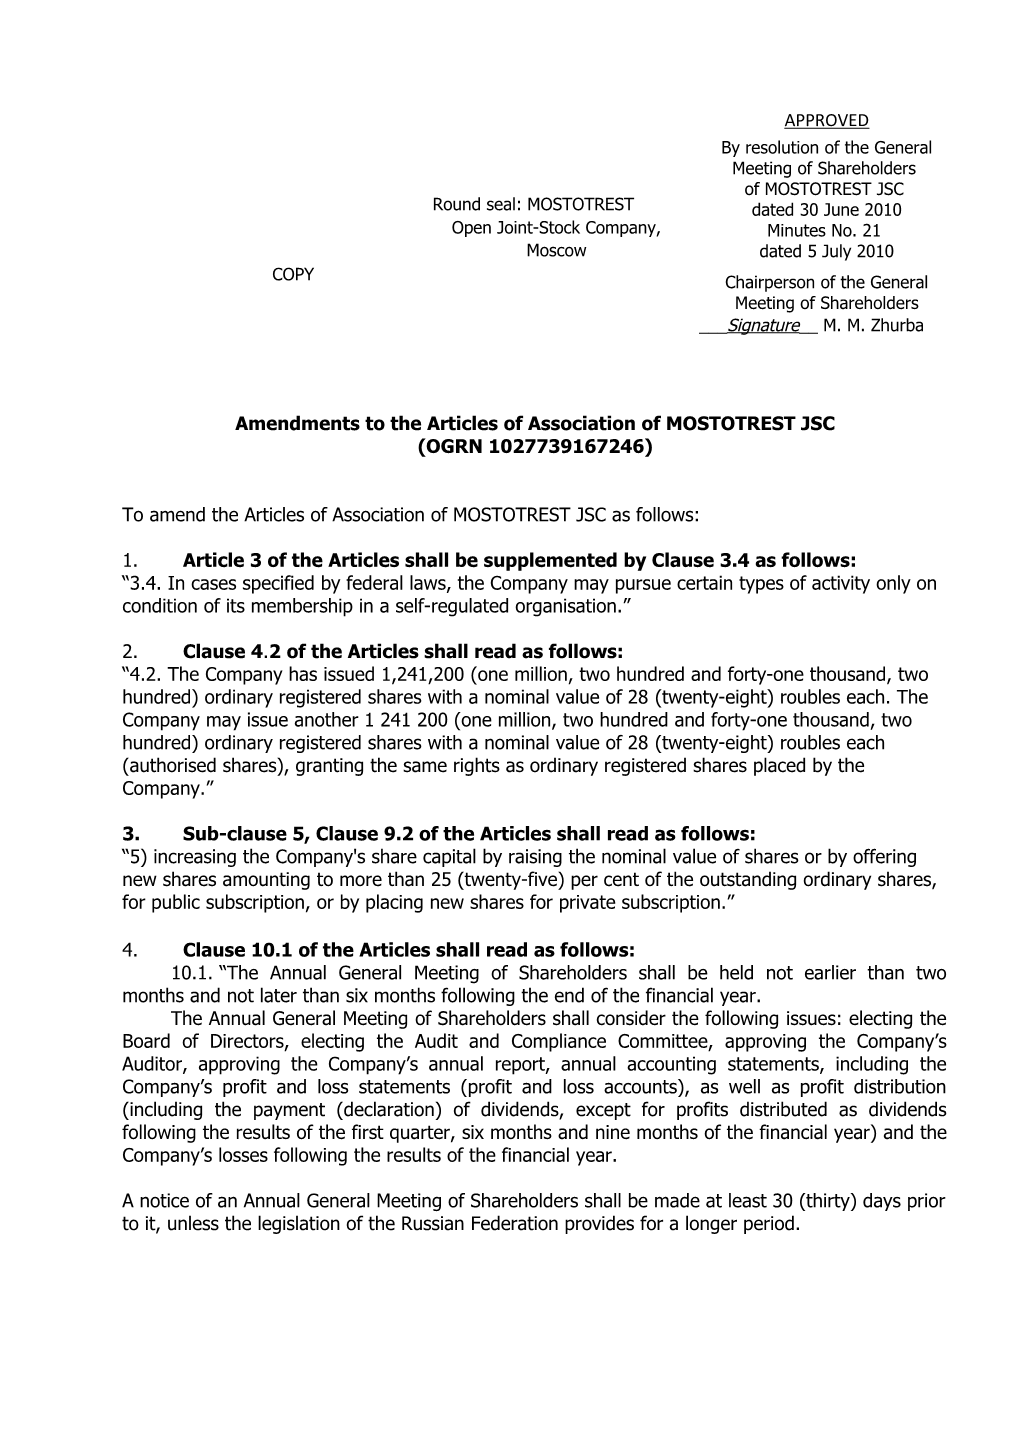 Amendments to the Articles of Association of MOSTOTREST JSC